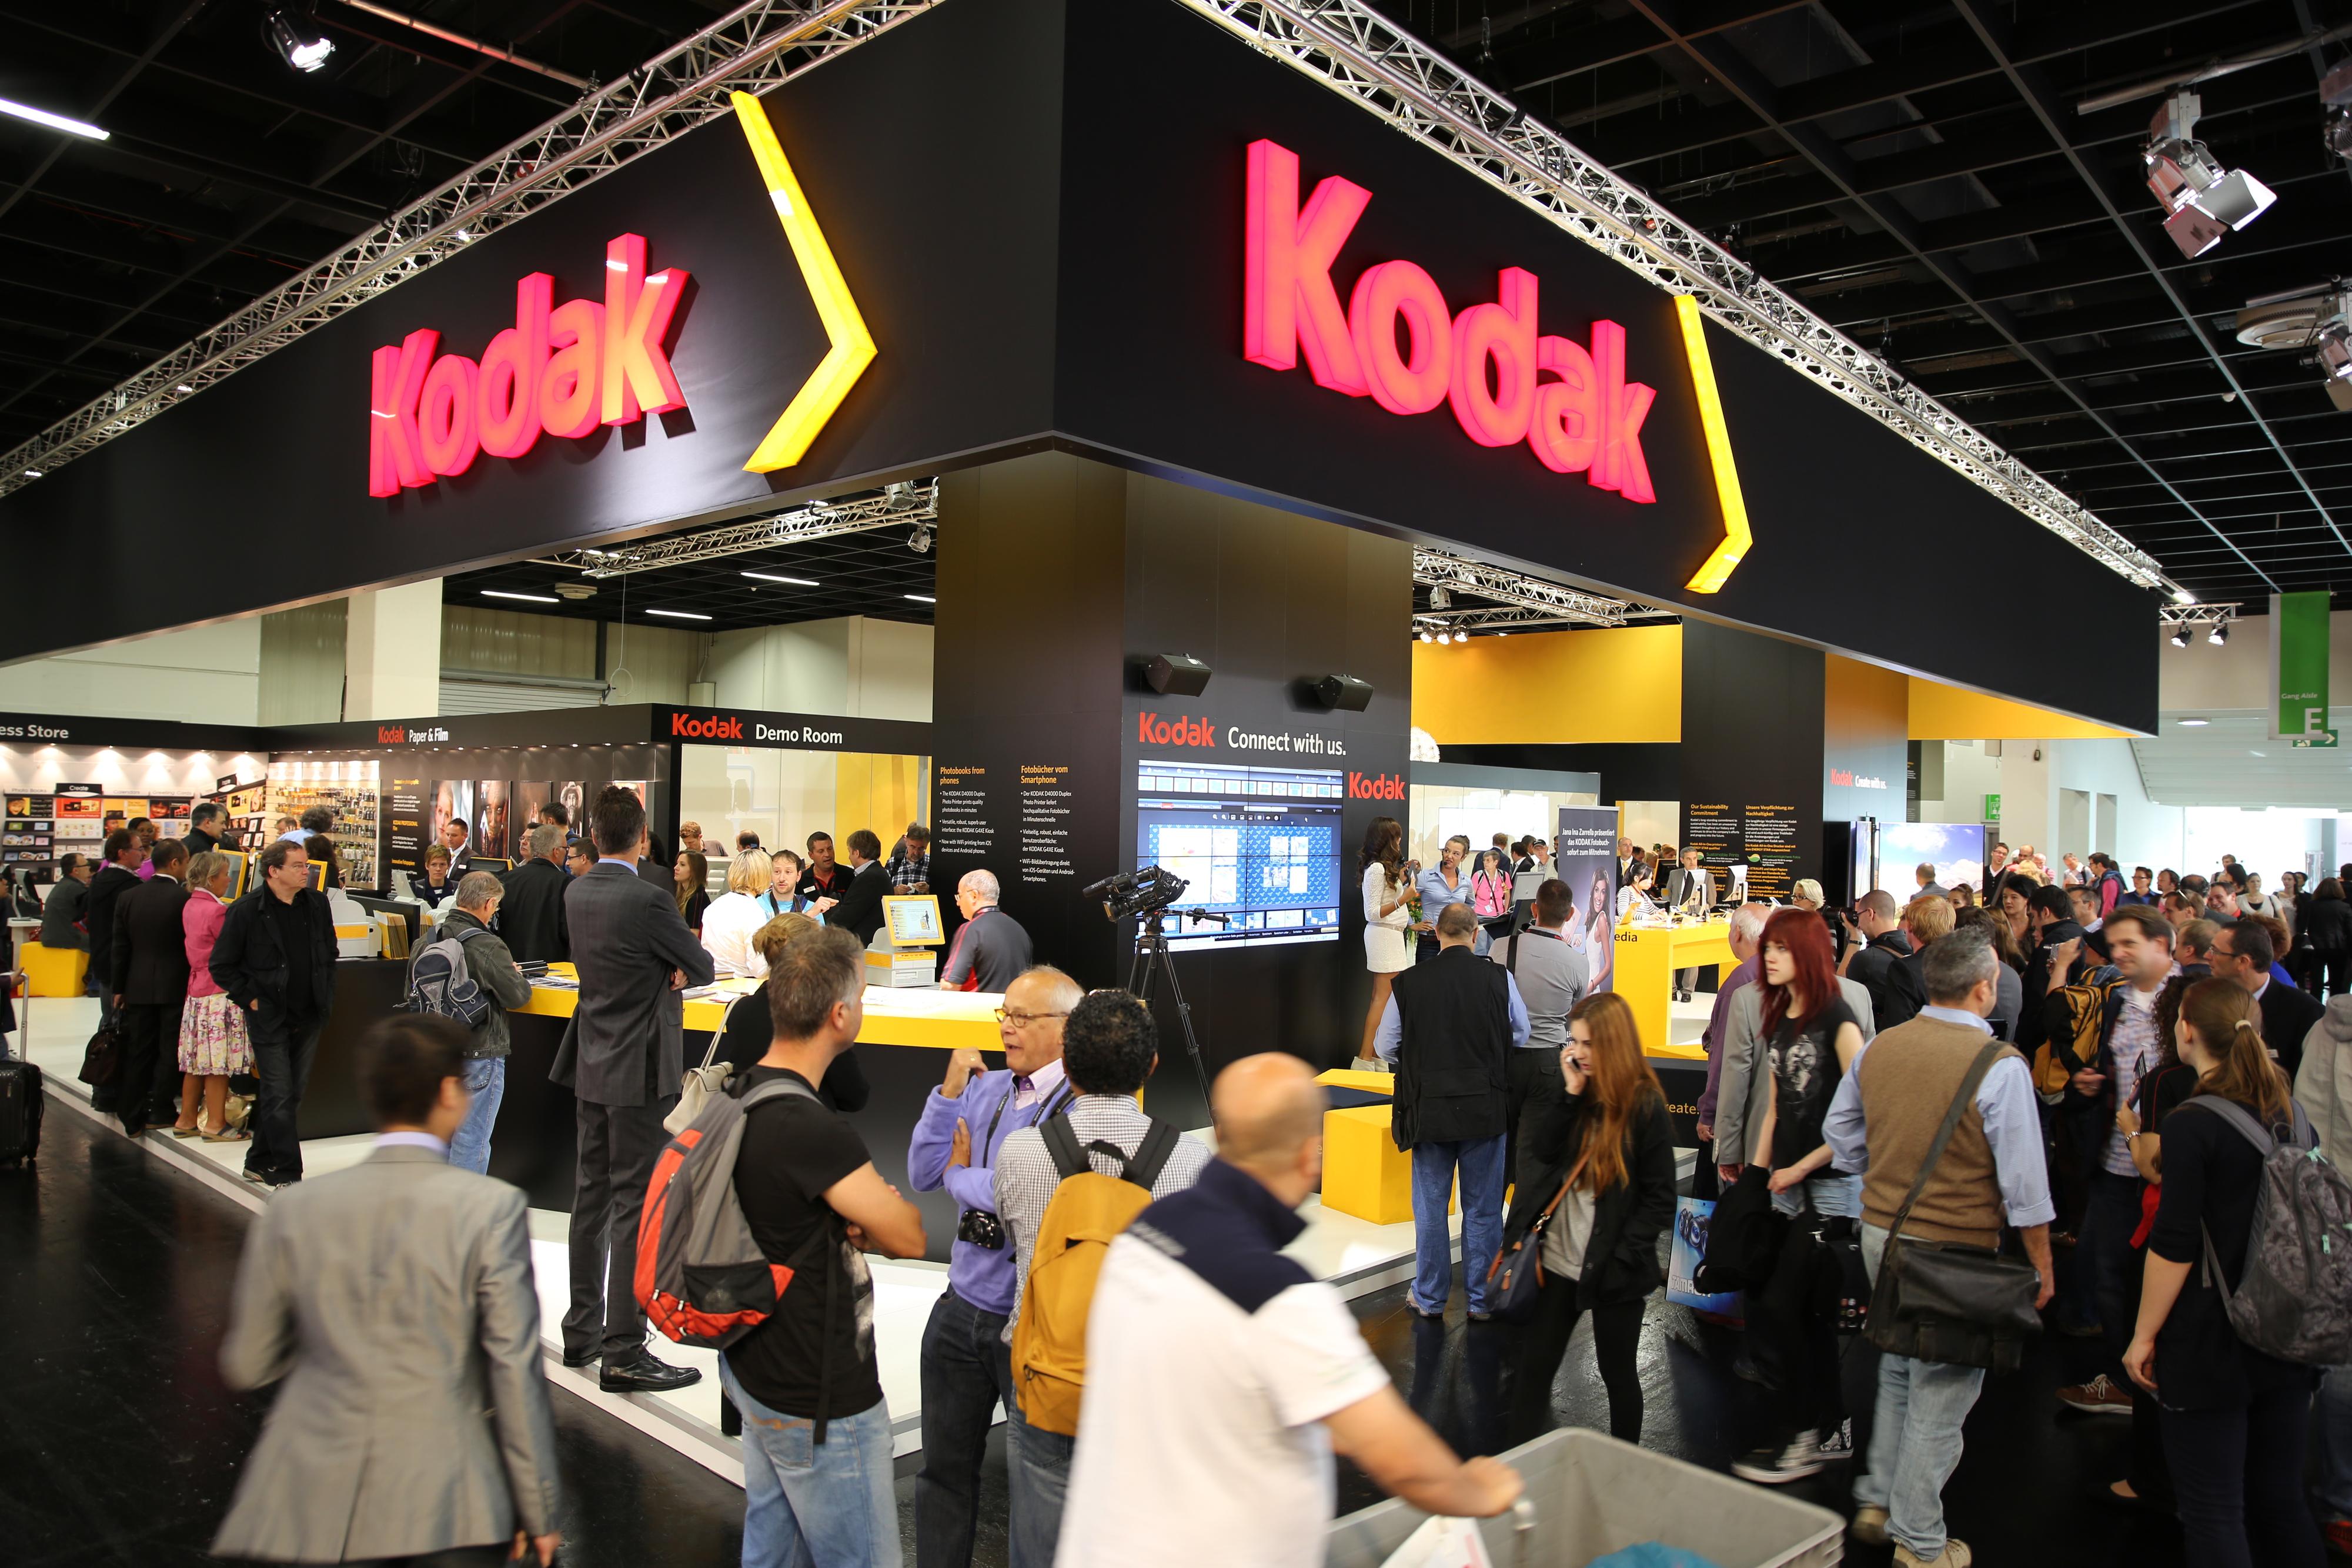 Kodak (jøss, eksisterer de fremdeles?).Foto: Are Thunes Samsonsen